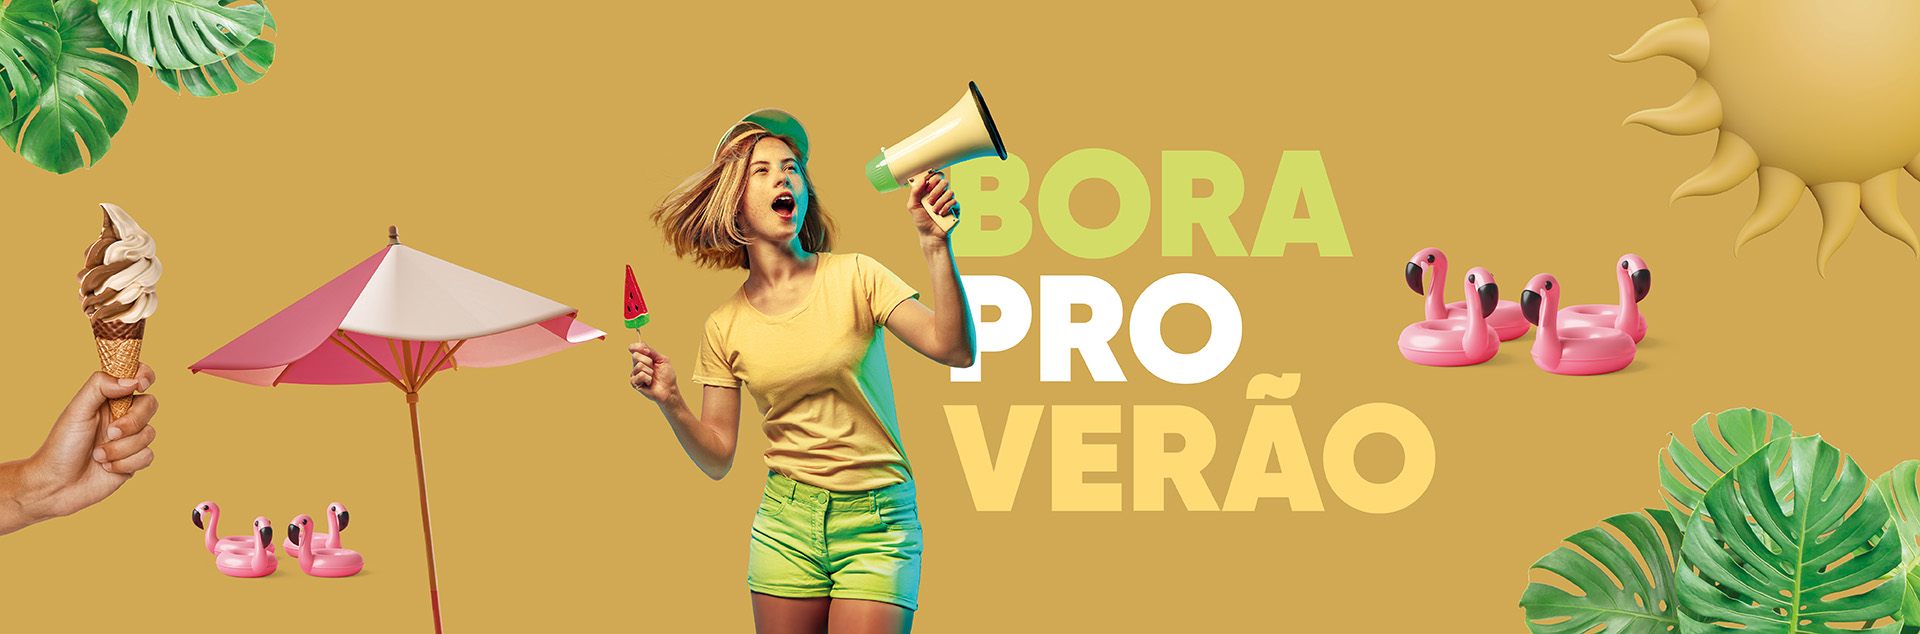 Moura - Banner Verao - 02